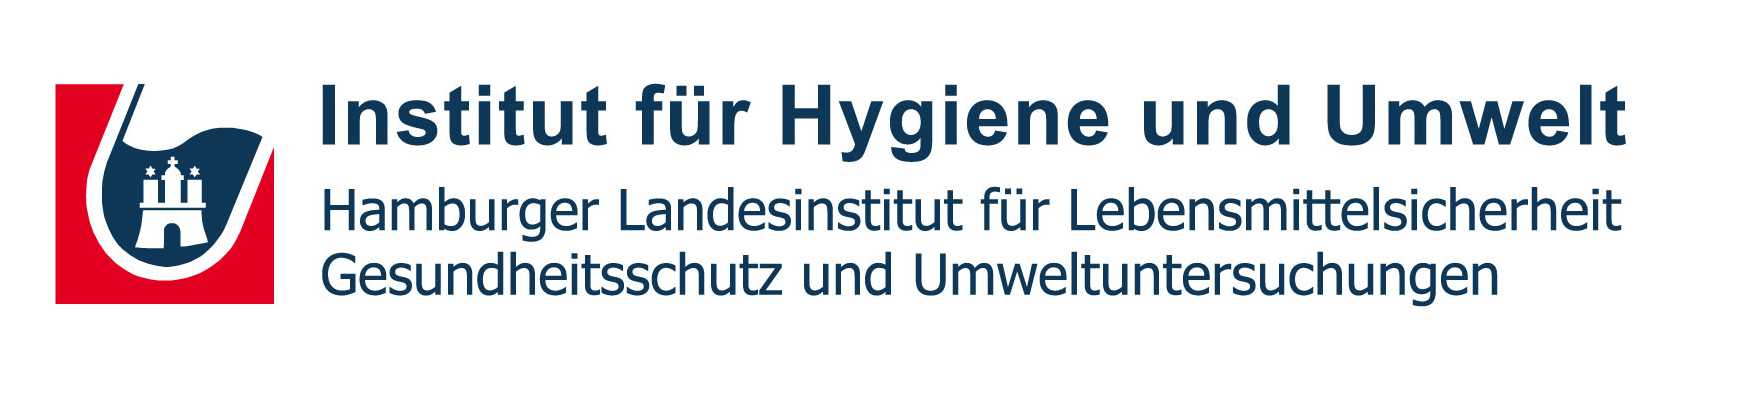 Institut für Hygiene